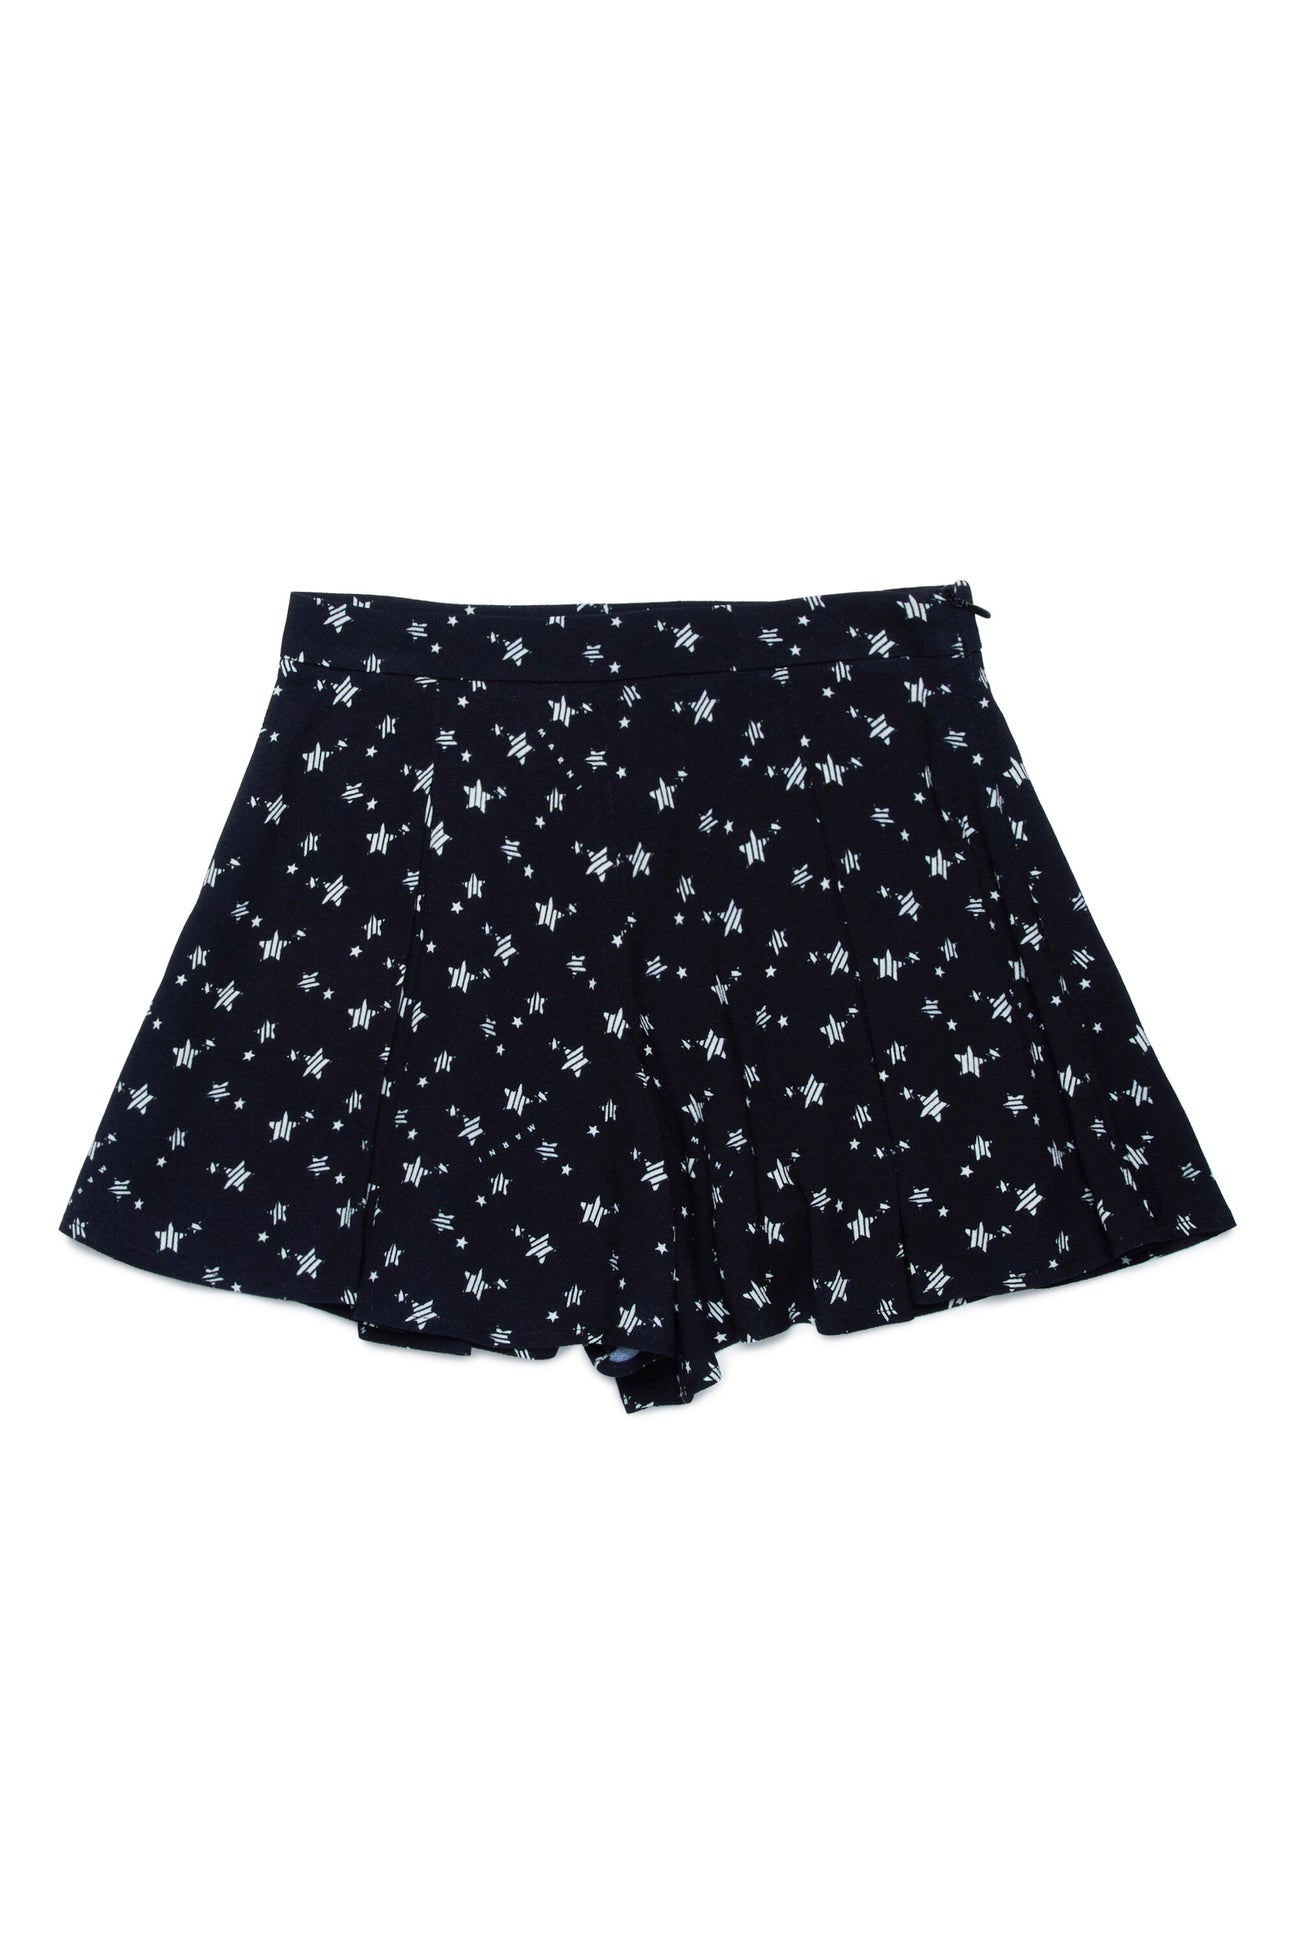 Trouser-skirt in all-over Stardust crepe fabric Trouser-skirt in all-over Stardust crepe fabric